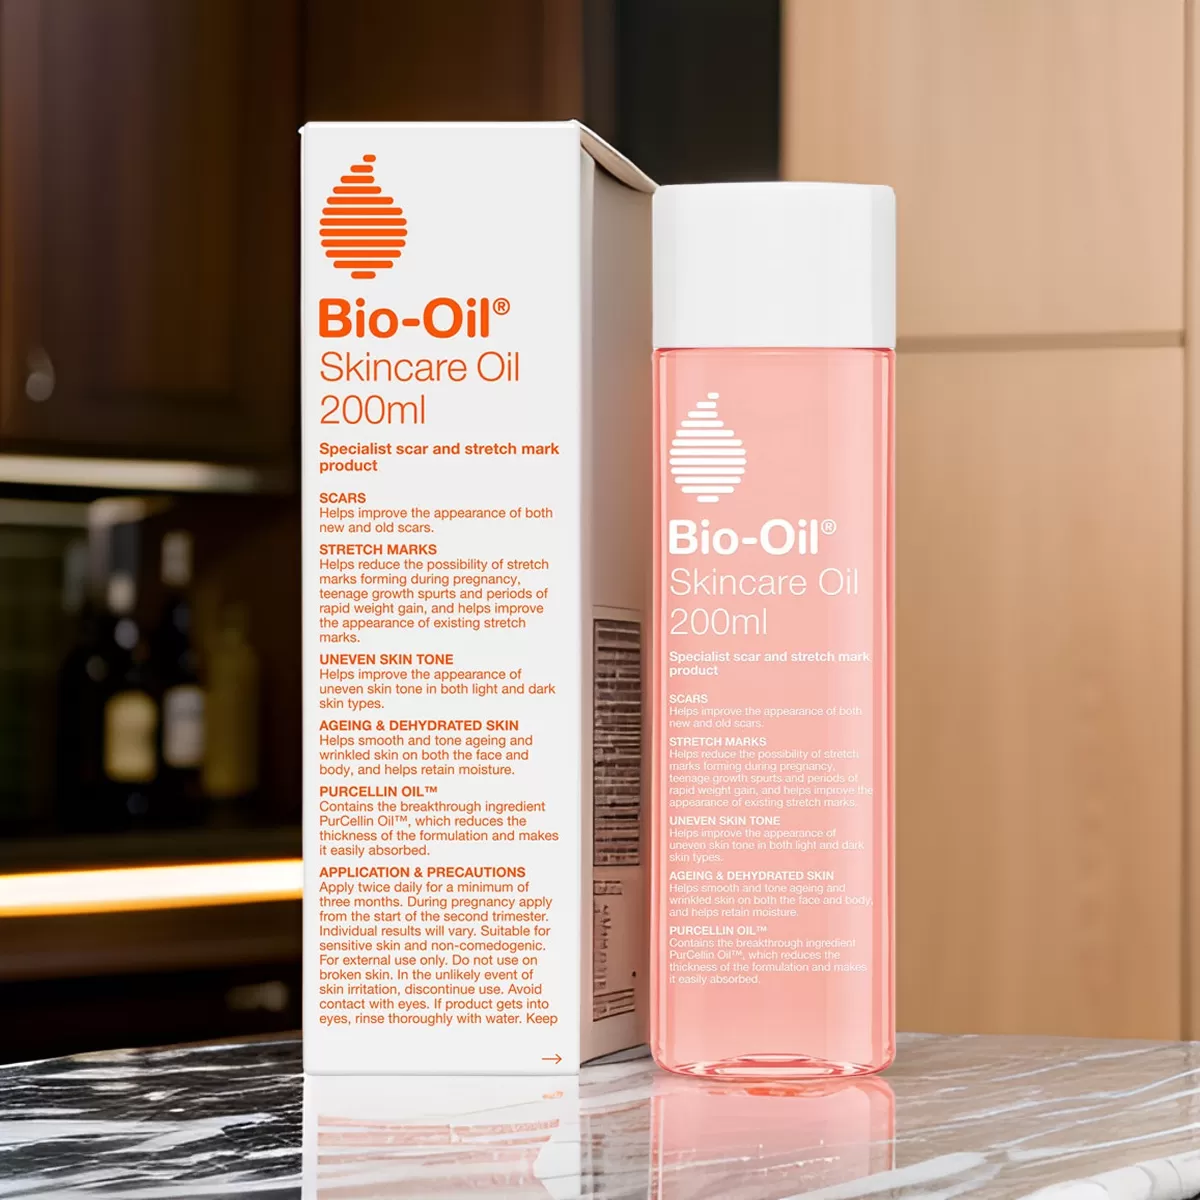 درباره روغن بایو اویل  Skincare Oil – 200ml اورجینال + (تخفیف)